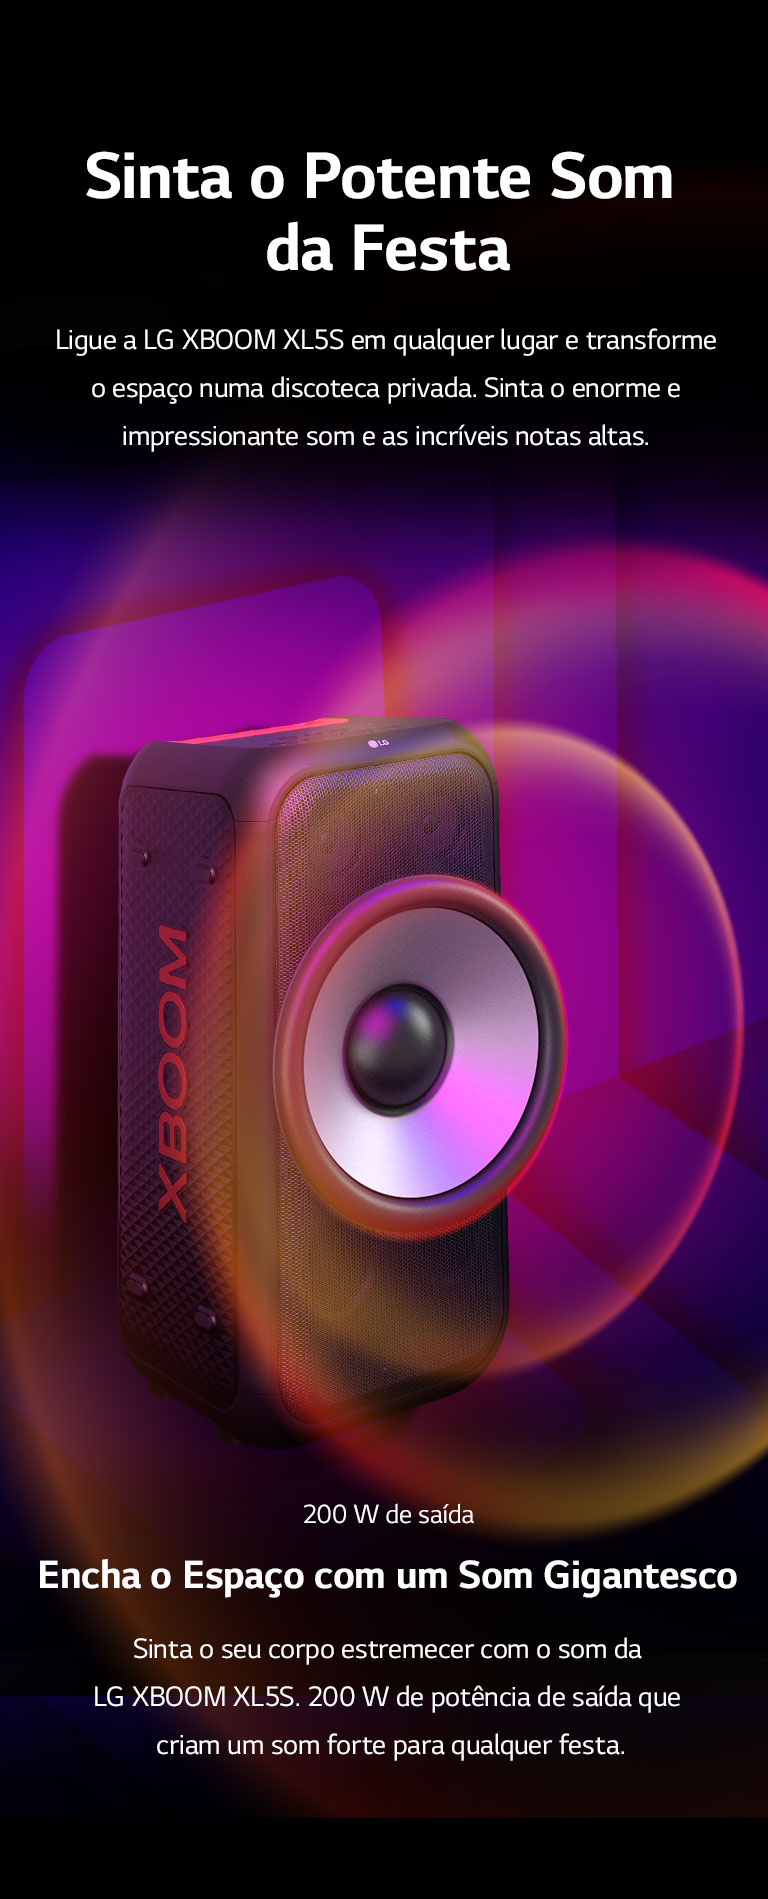 LG XBOOM XL5S posicionada no espaço infinito. Na parede, gráficos sonoros quadrados ilustrados. A meio da coluna um woofer gigante de 16,5 cm está ampliado para enfatizar o enorme som de 200 W. Ondas sonoras saem do woofer.